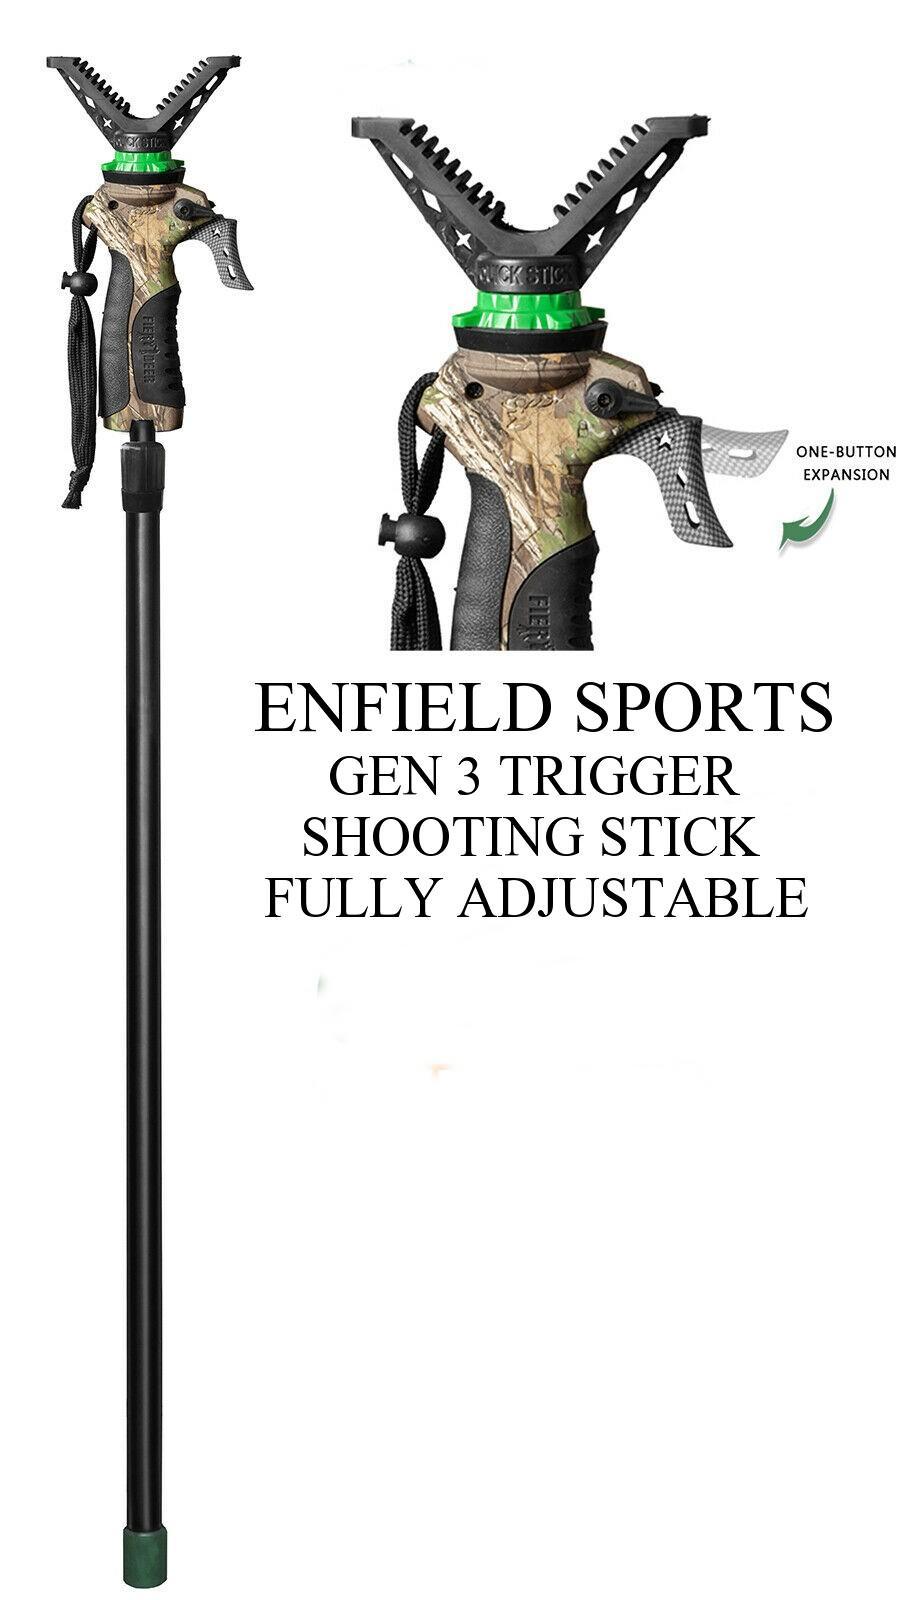 gen3_trigger_adjustable_shooting_stick